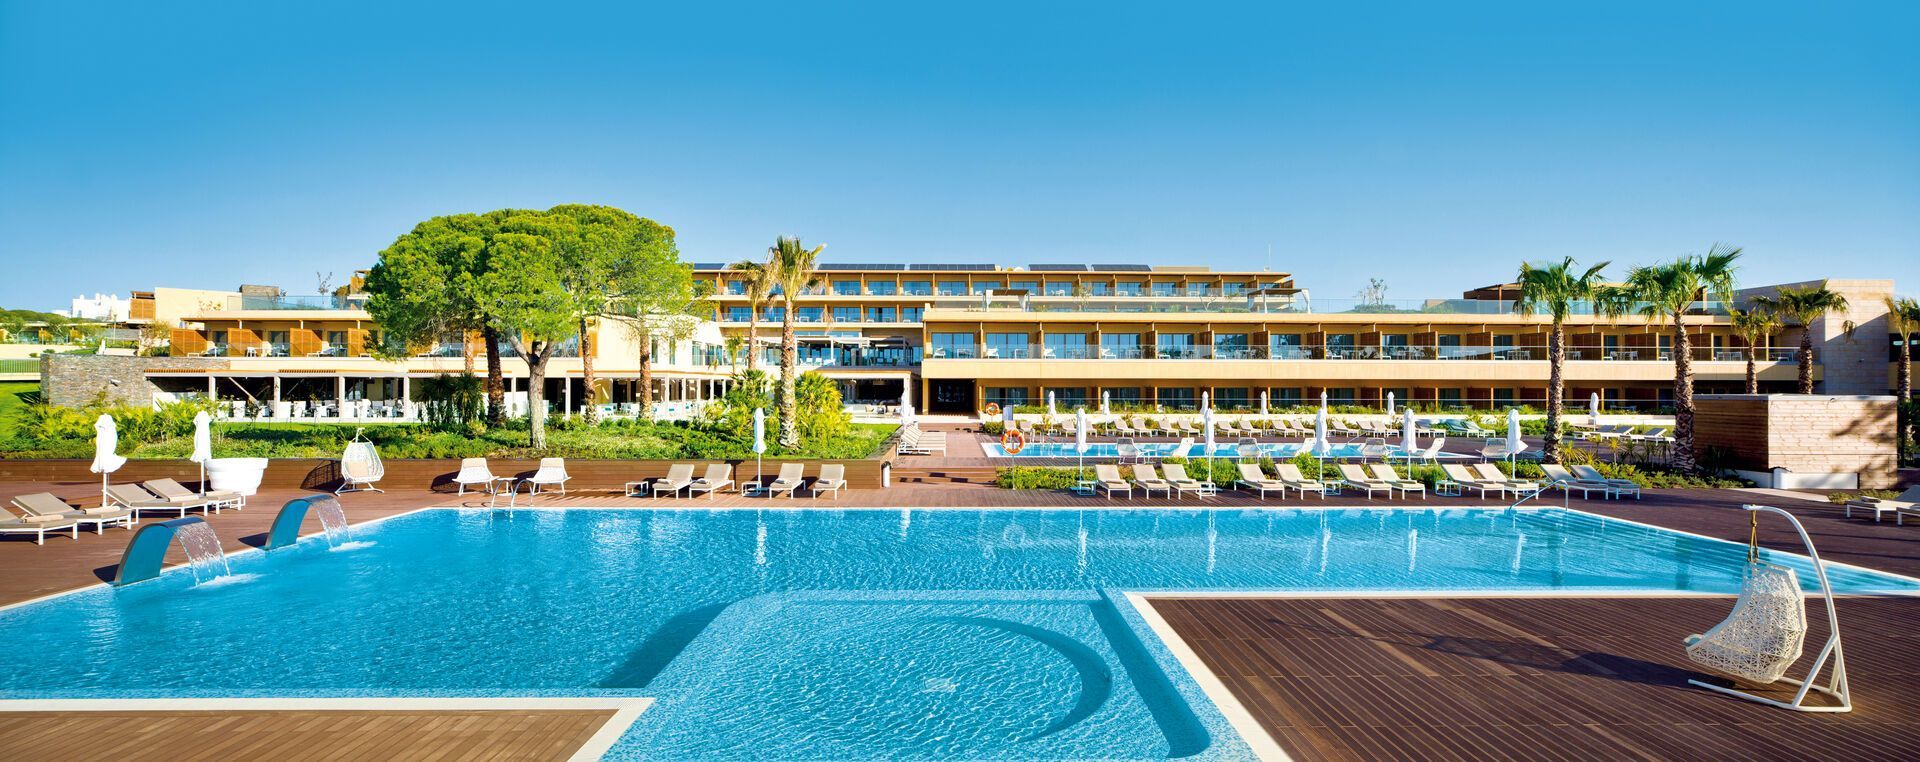 Hôtel Epic Sana Algarve 5* pas cher photo 1